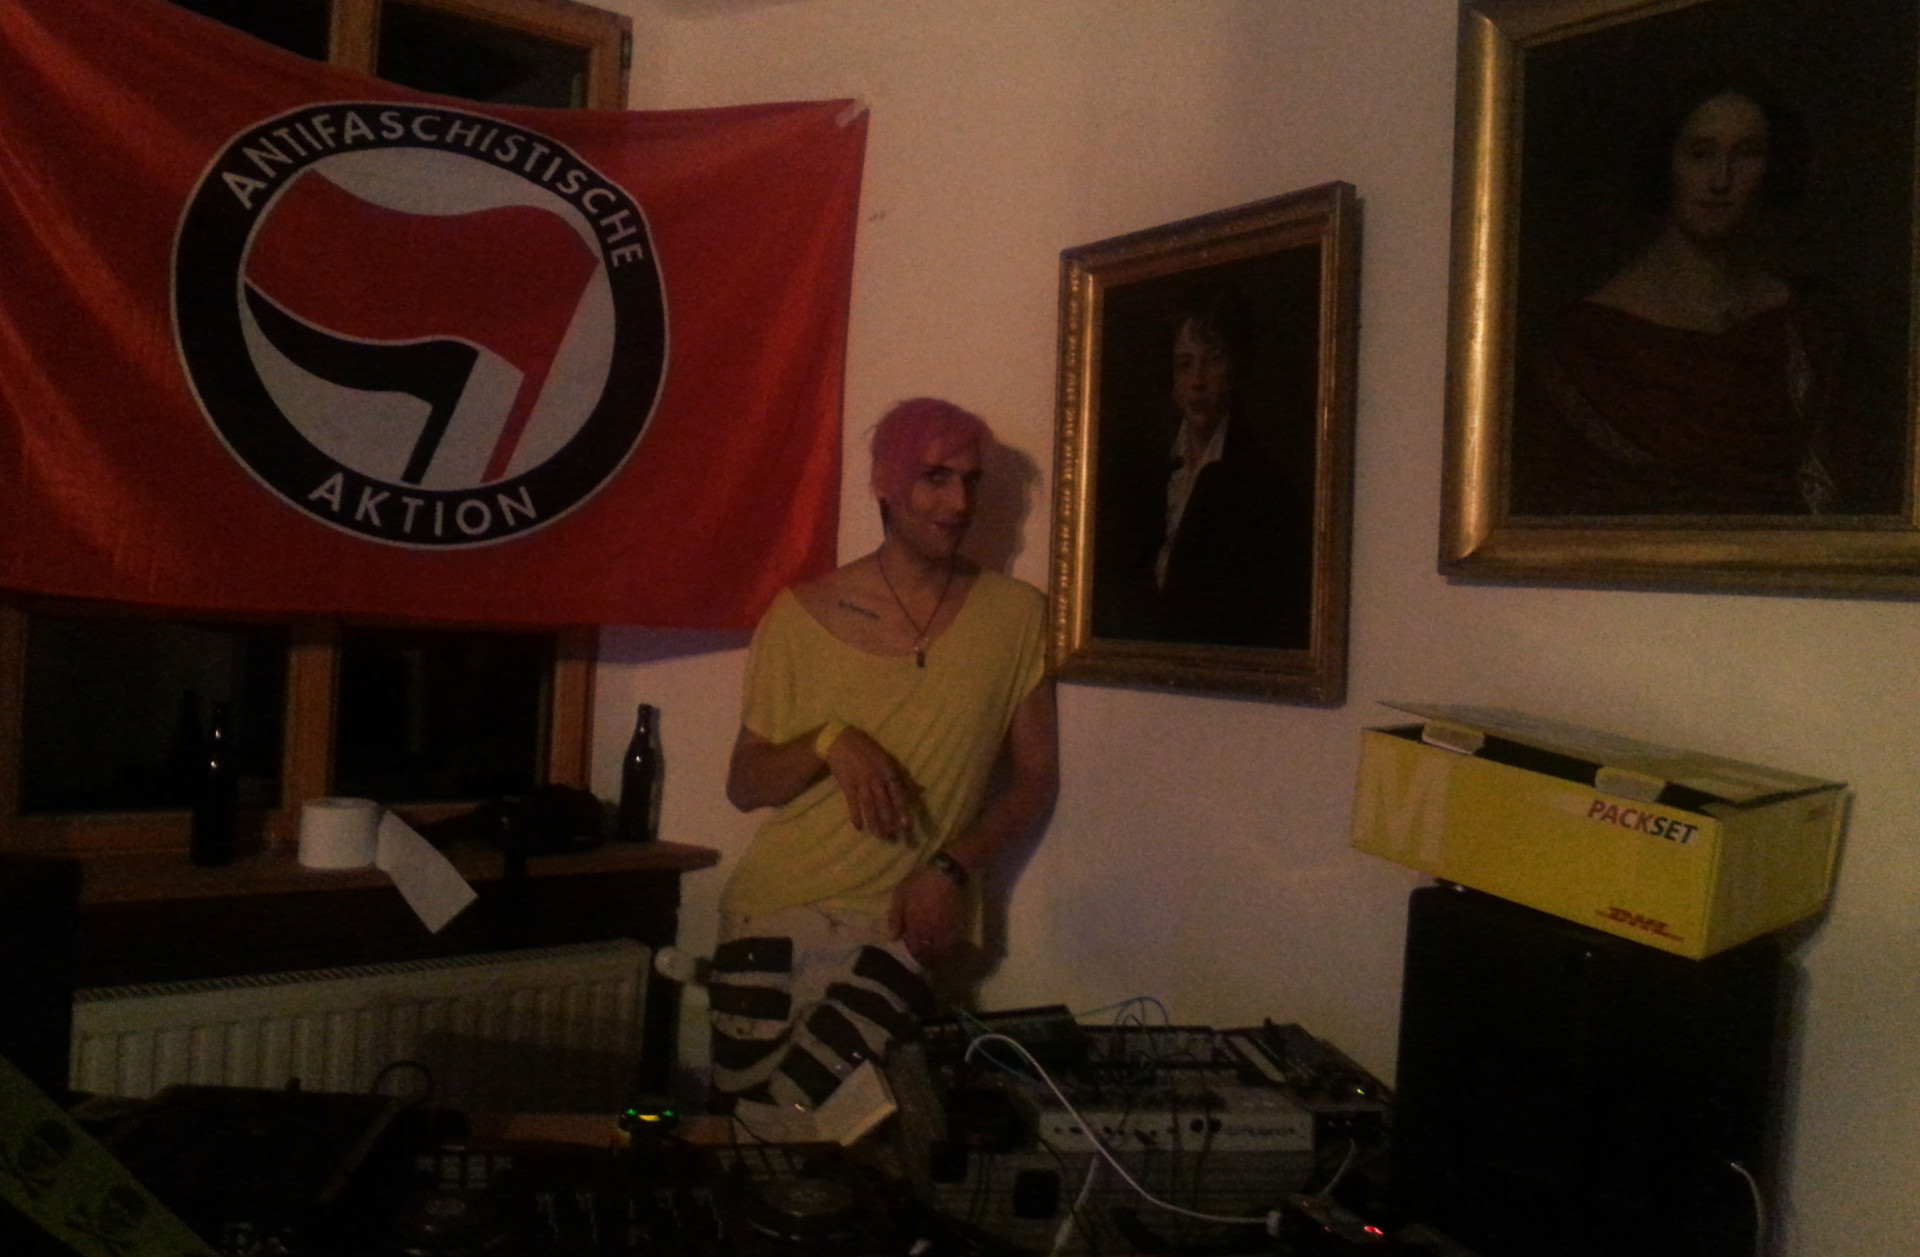 Phant hinter dem DJ-Pult, zwischen Antifa-Fahne und Ahnenportraits.